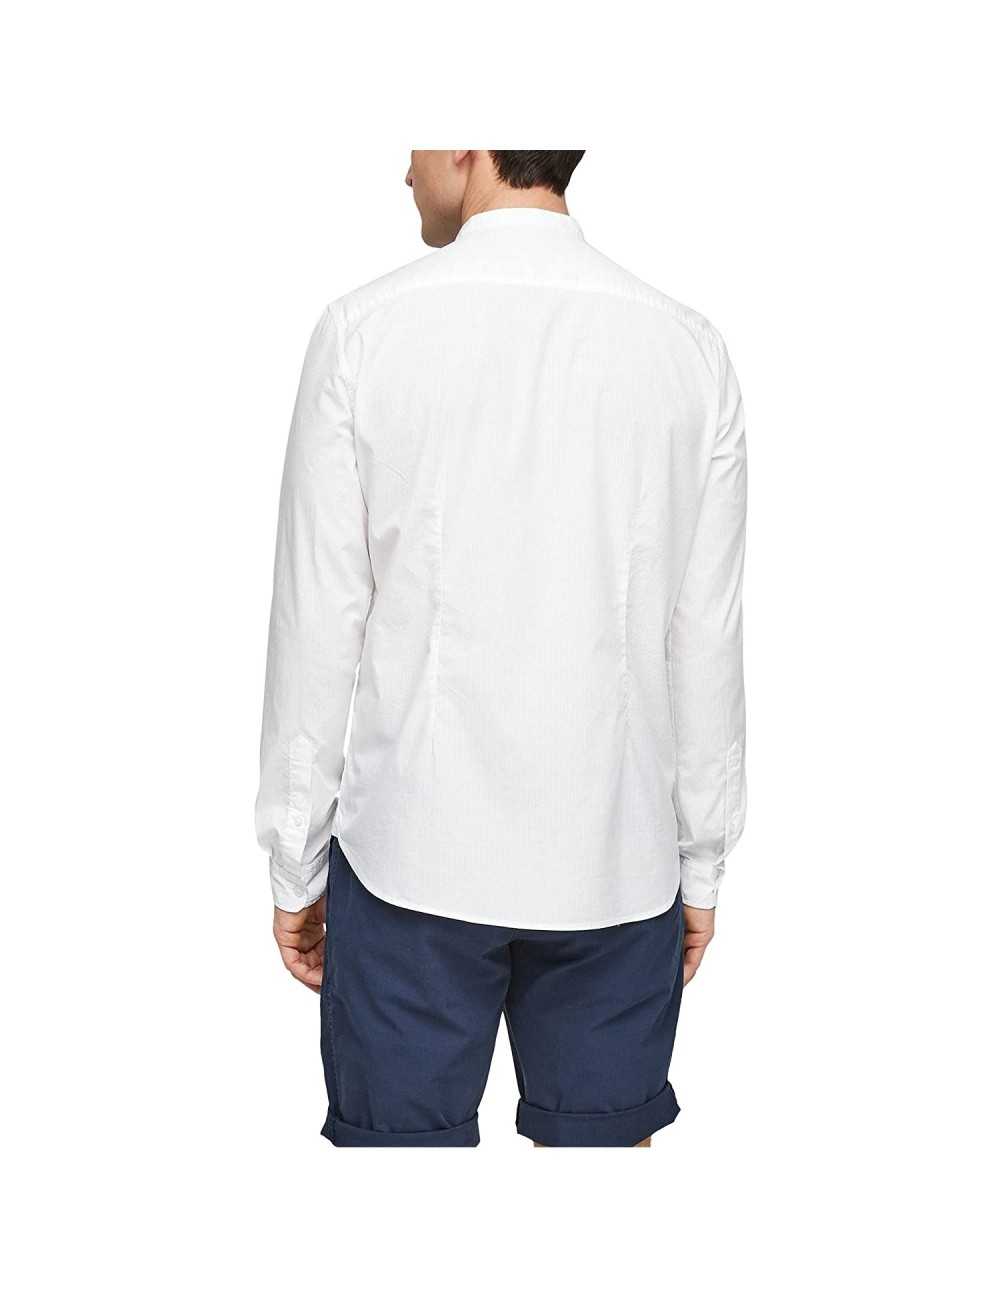 S.Oliver Camicia Uomo slim fit coreana bianca in cotone - Camicie Uomo